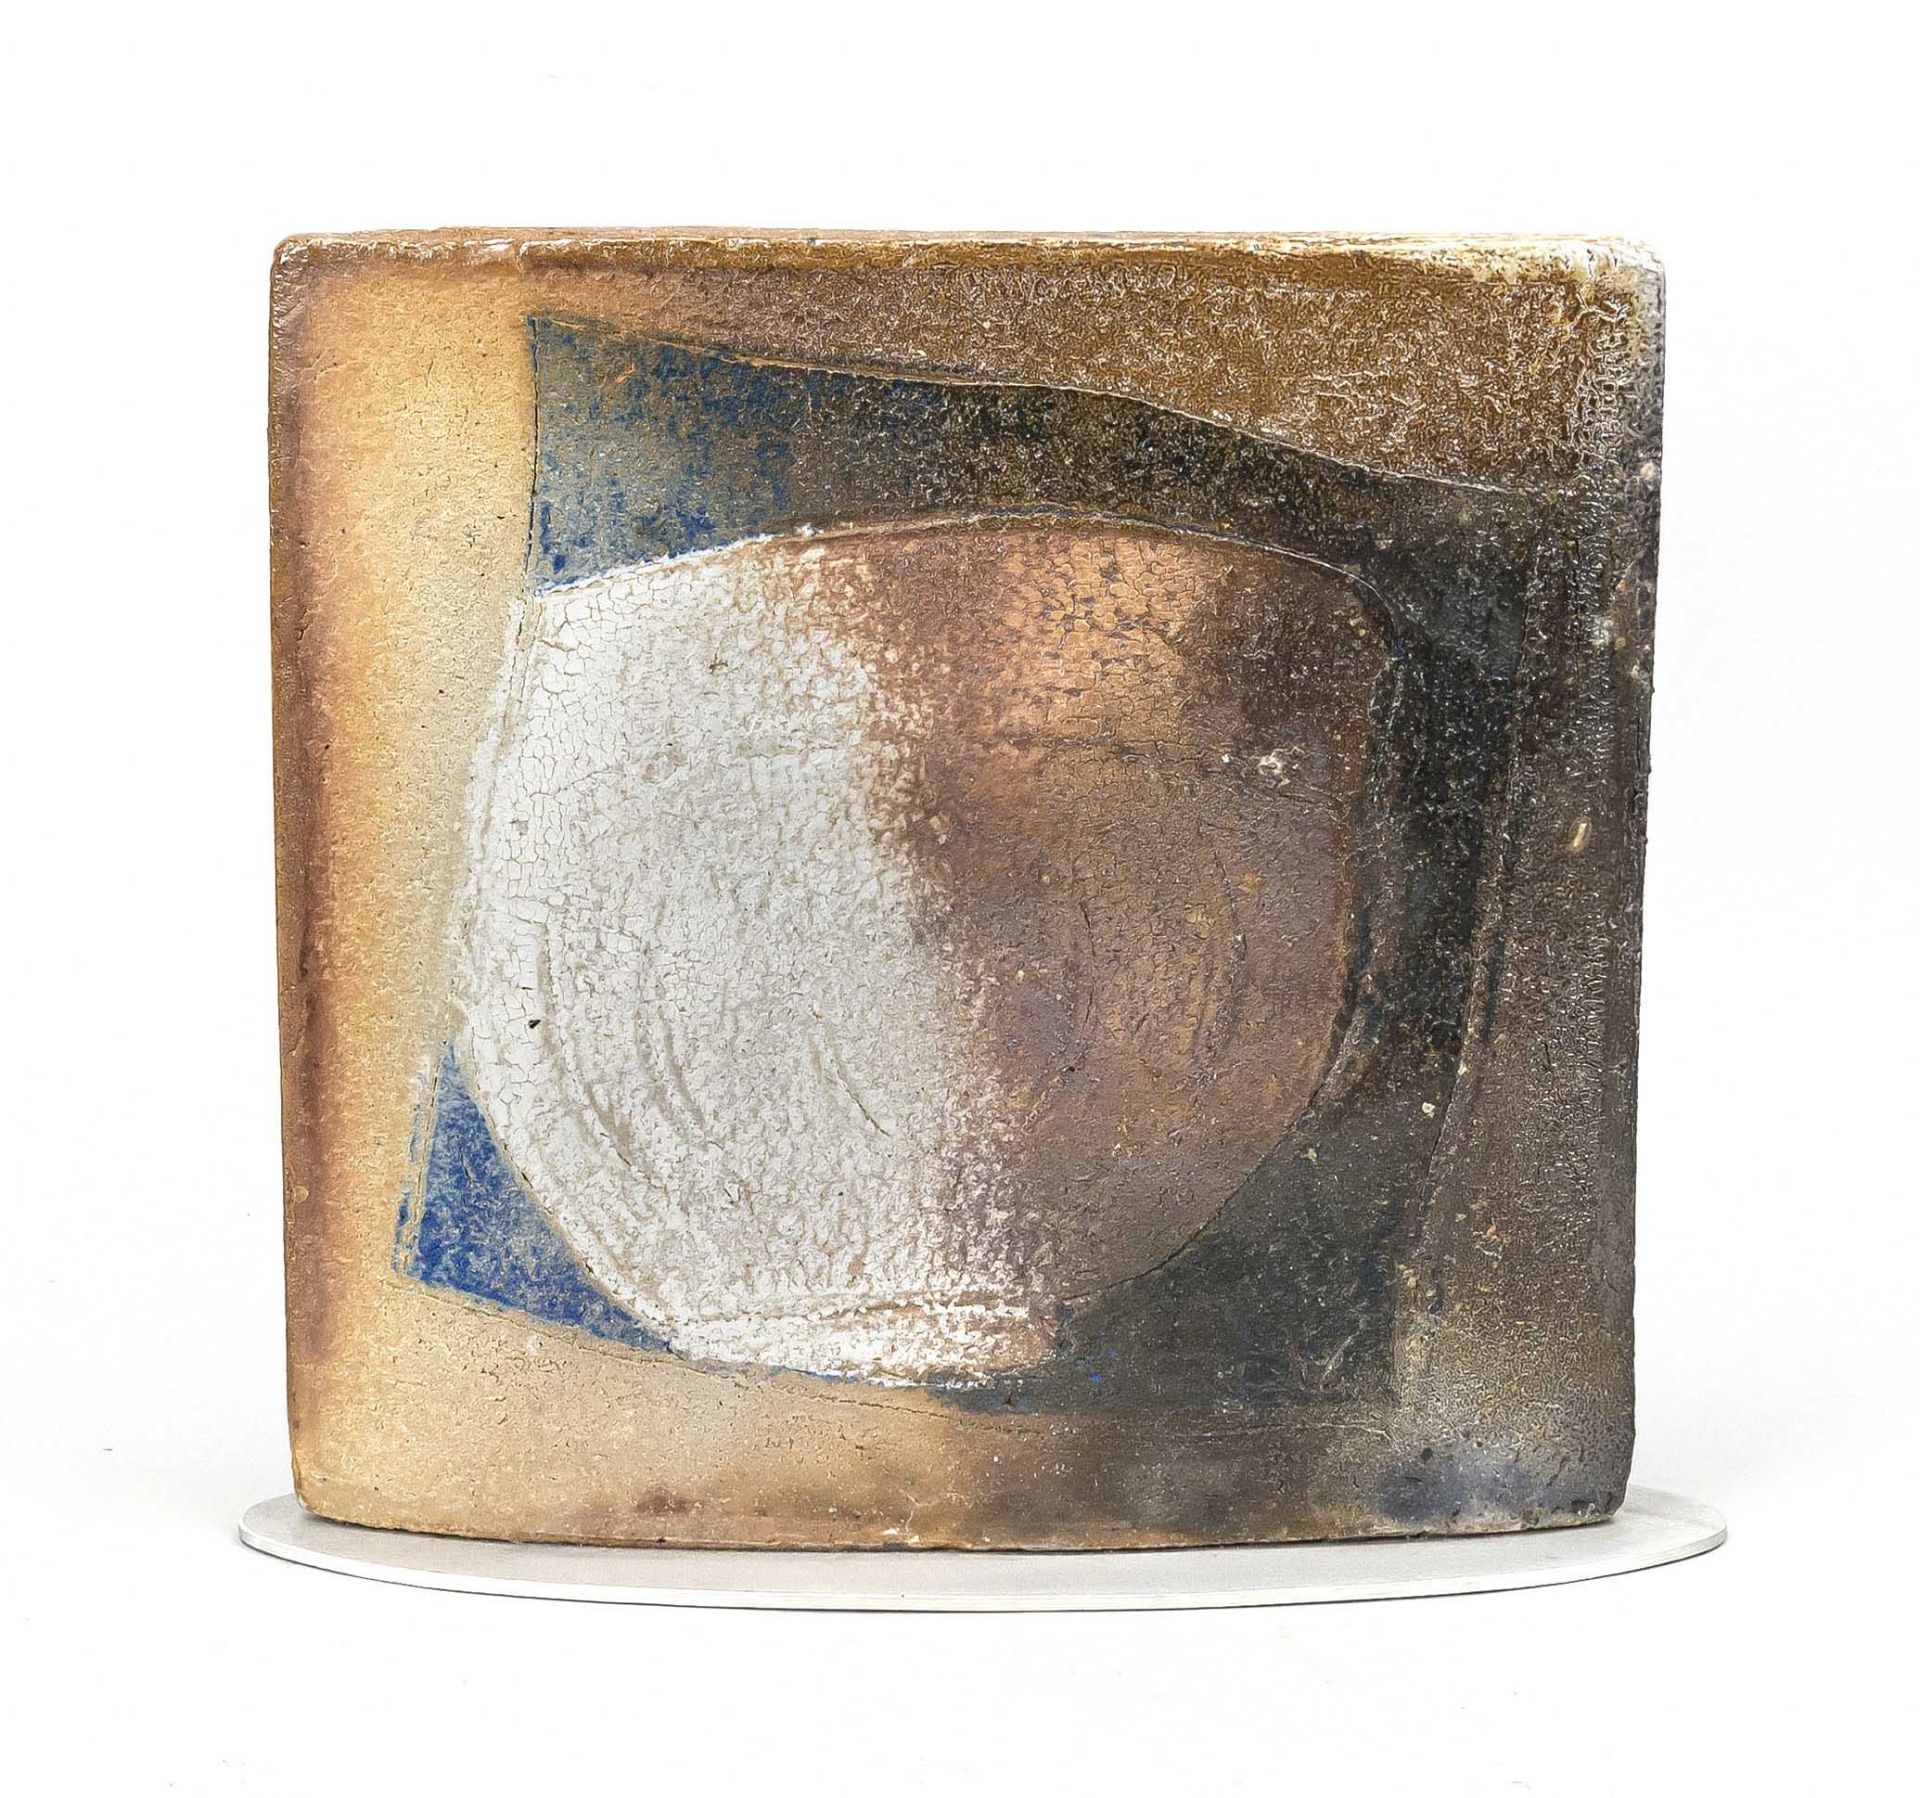 Martin McWilliam (*1957), vase object, polychrome painted ceramic on elliptical aluminum base, 33